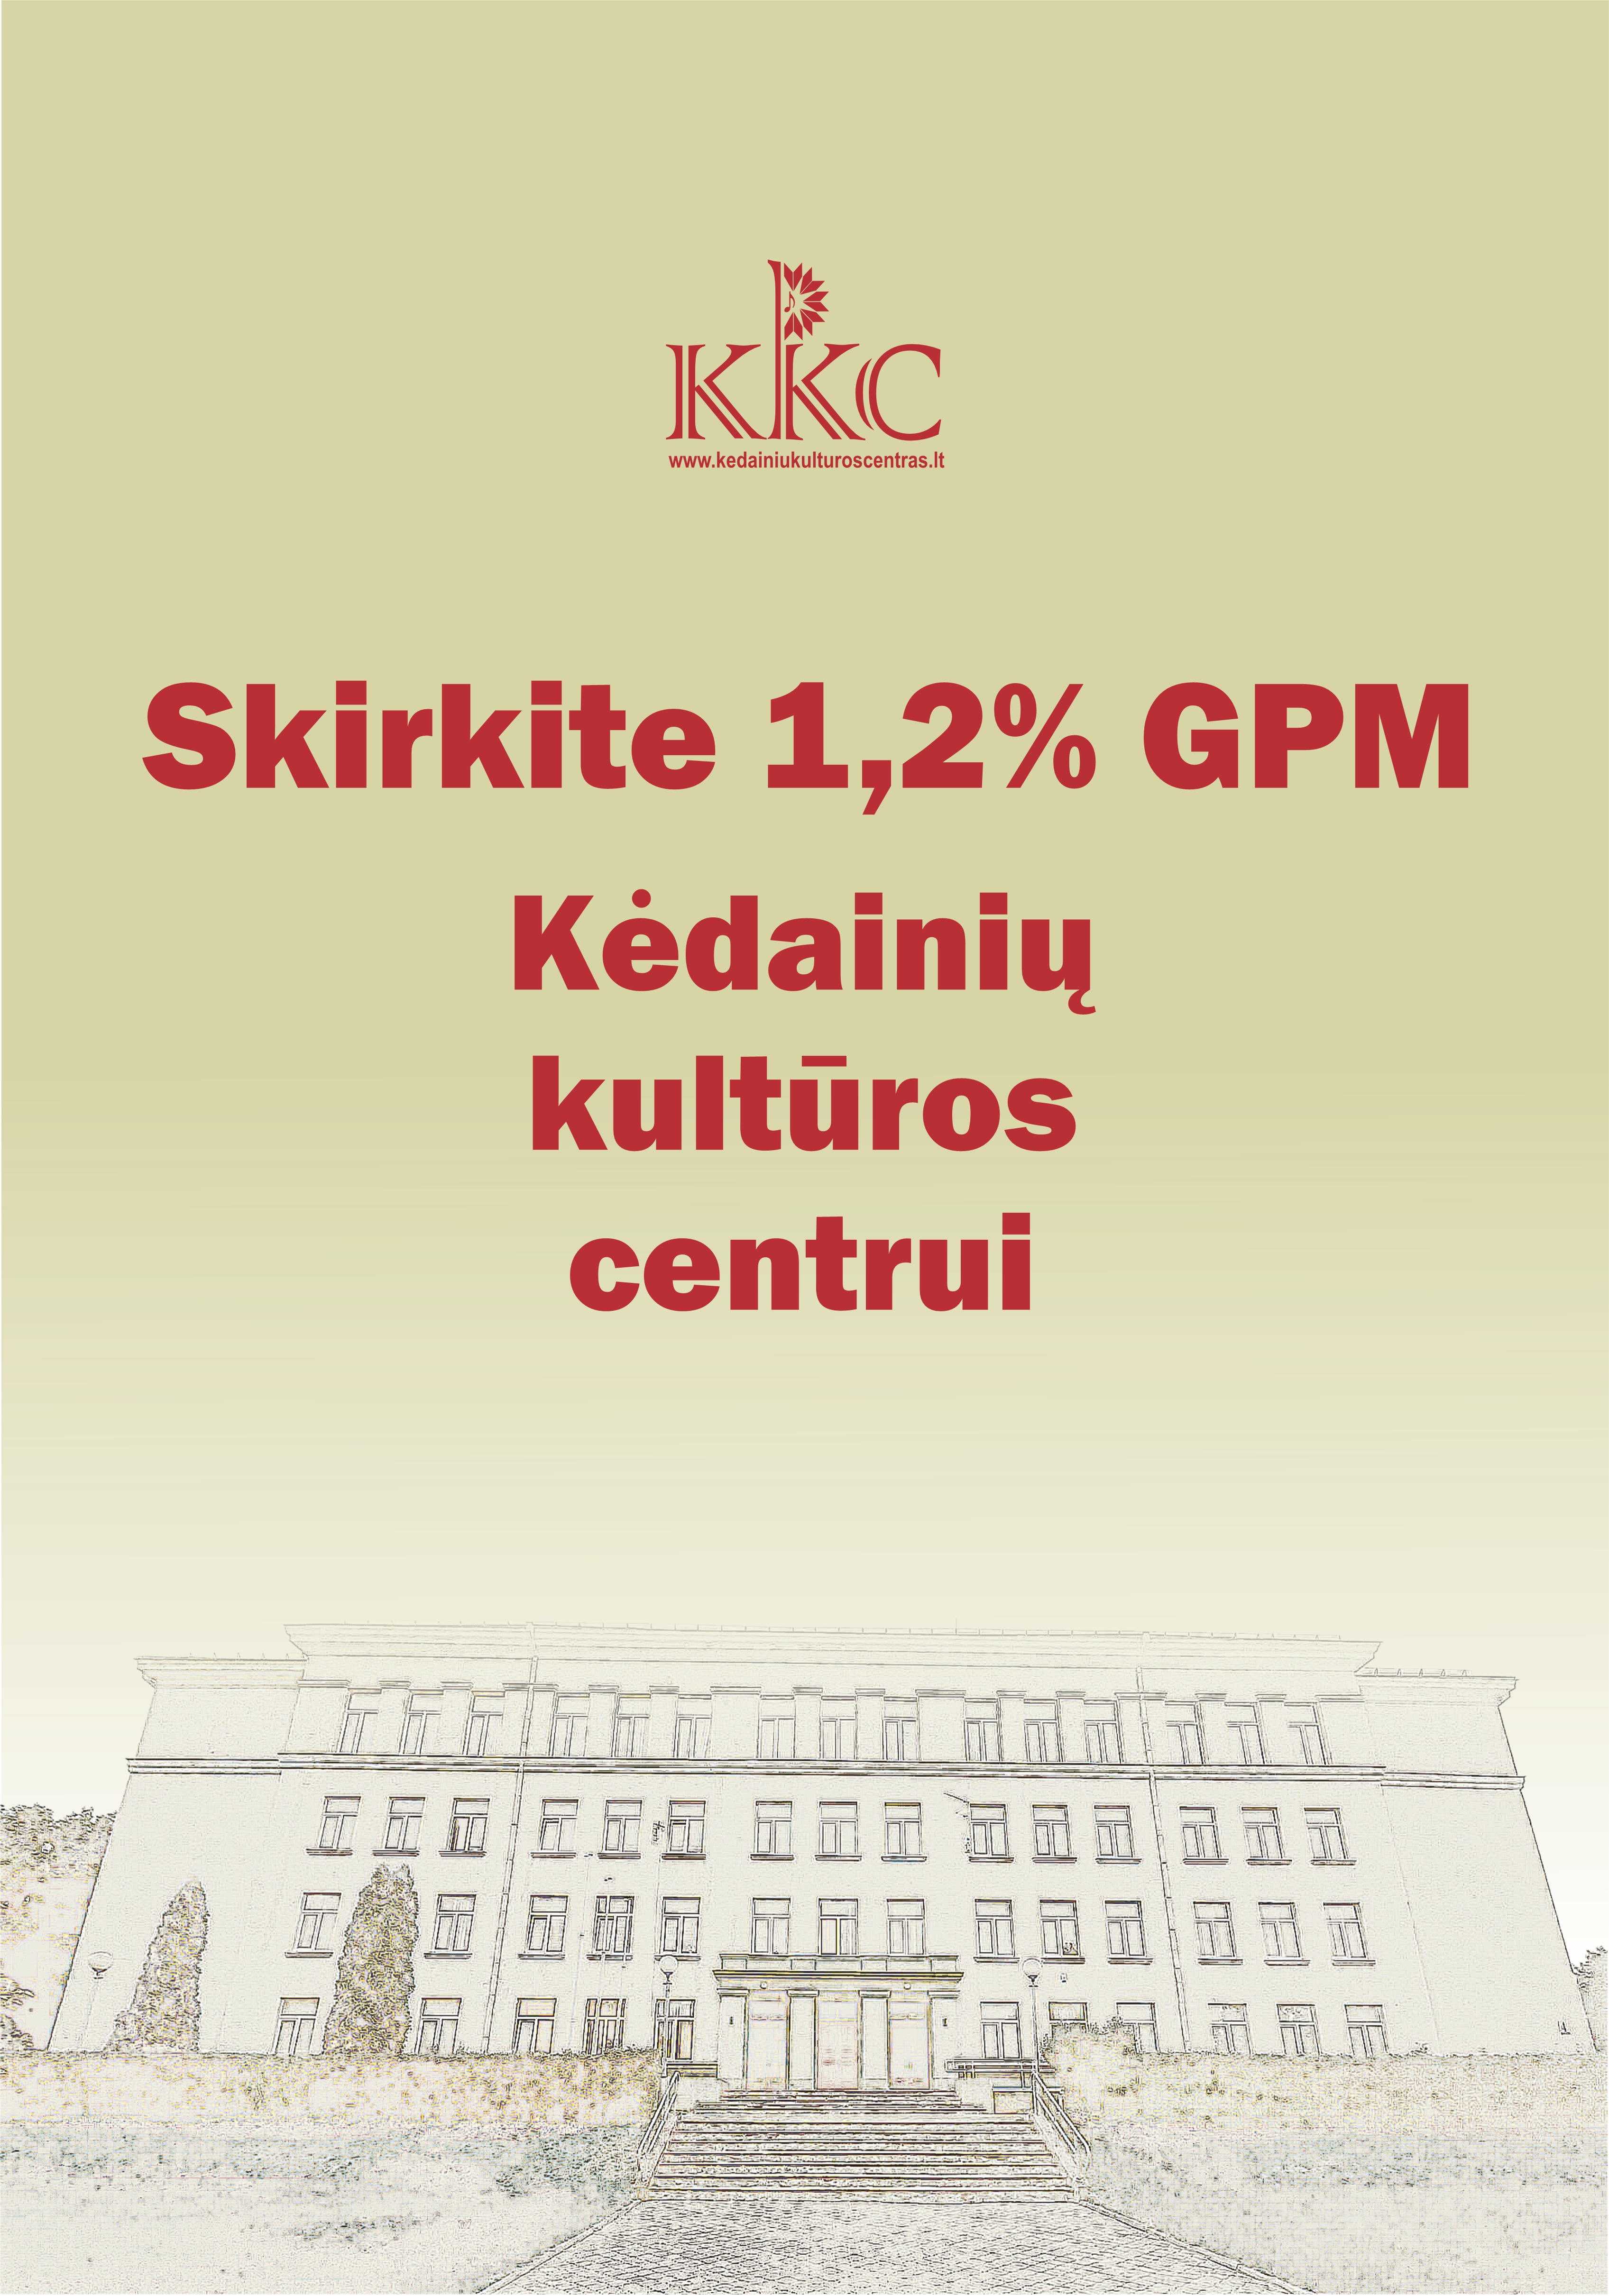 Skirkite 1,2% GPM Kėdainių kultūros centrui